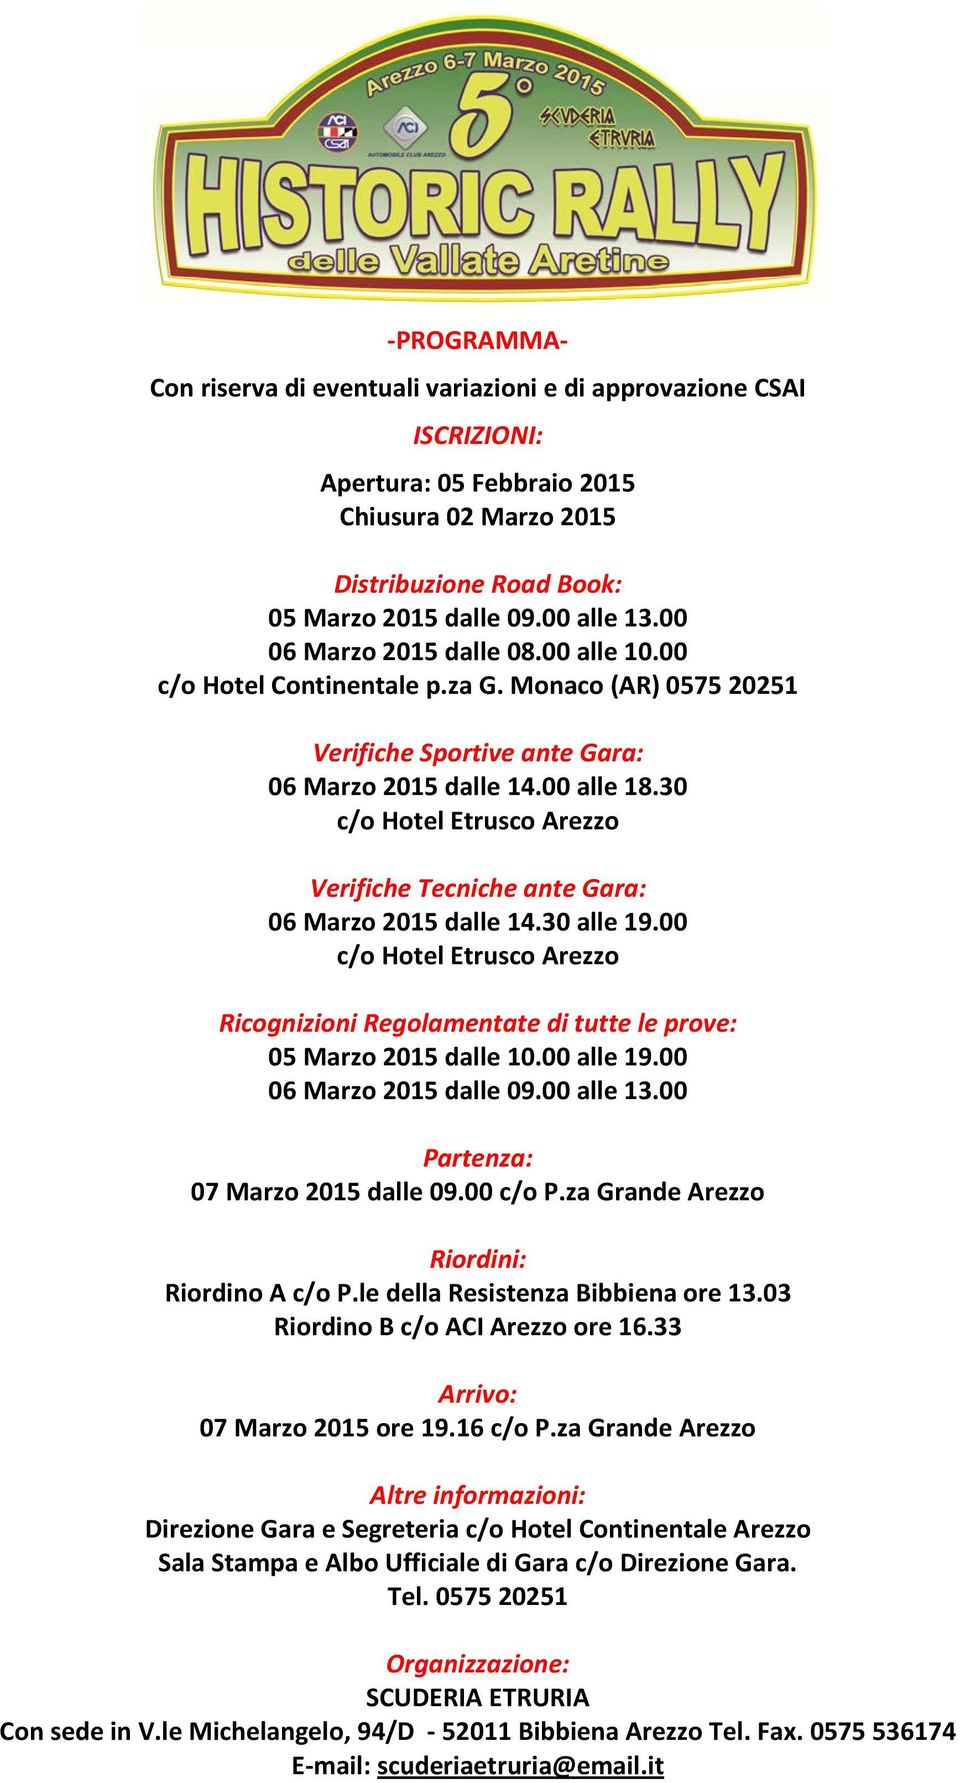 30 c/o Hotel Etrusco Arezzo Verifiche Tecniche ante Gara: 06 Marzo 2015 dalle 14.30 alle 19.00 c/o Hotel Etrusco Arezzo Ricognizioni Regolamentate di tutte le prove: 05 Marzo 2015 dalle 10.00 alle 19.